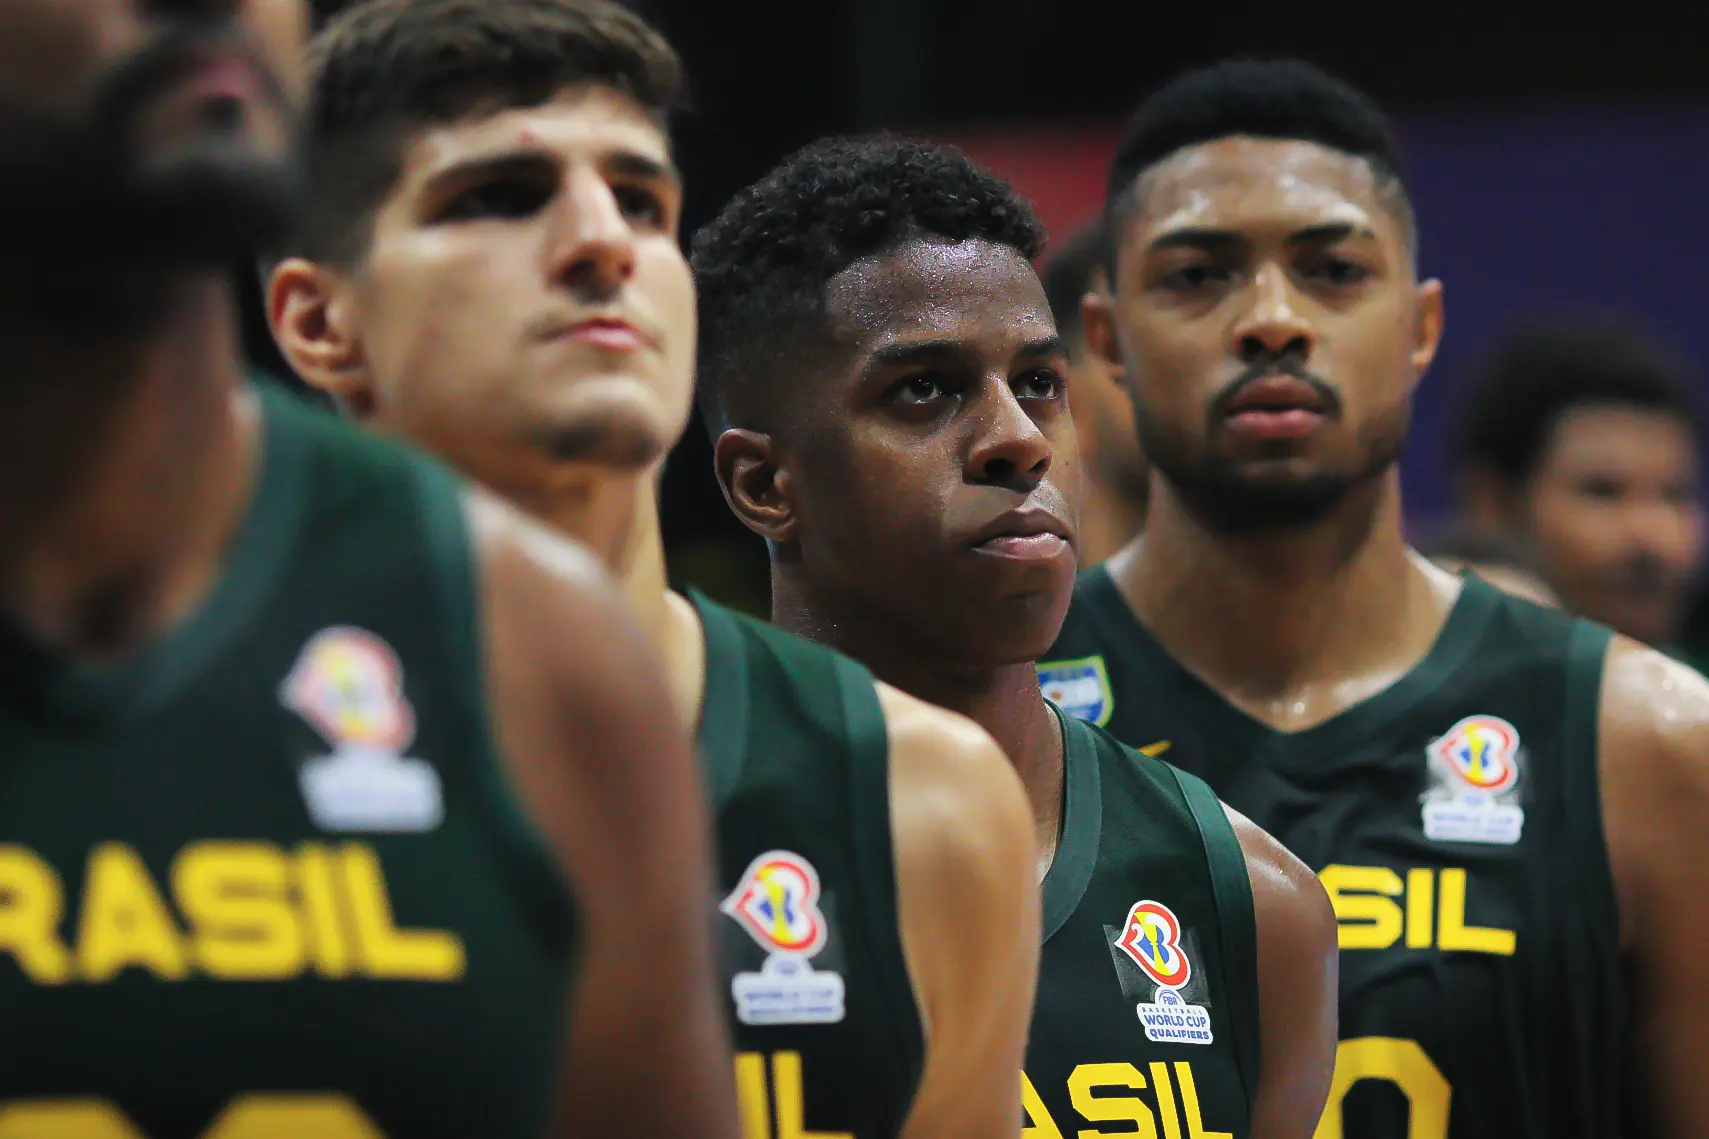 Brasil vence os EUA nas Eliminatórias da Copa do Mundo de basquete, basquete